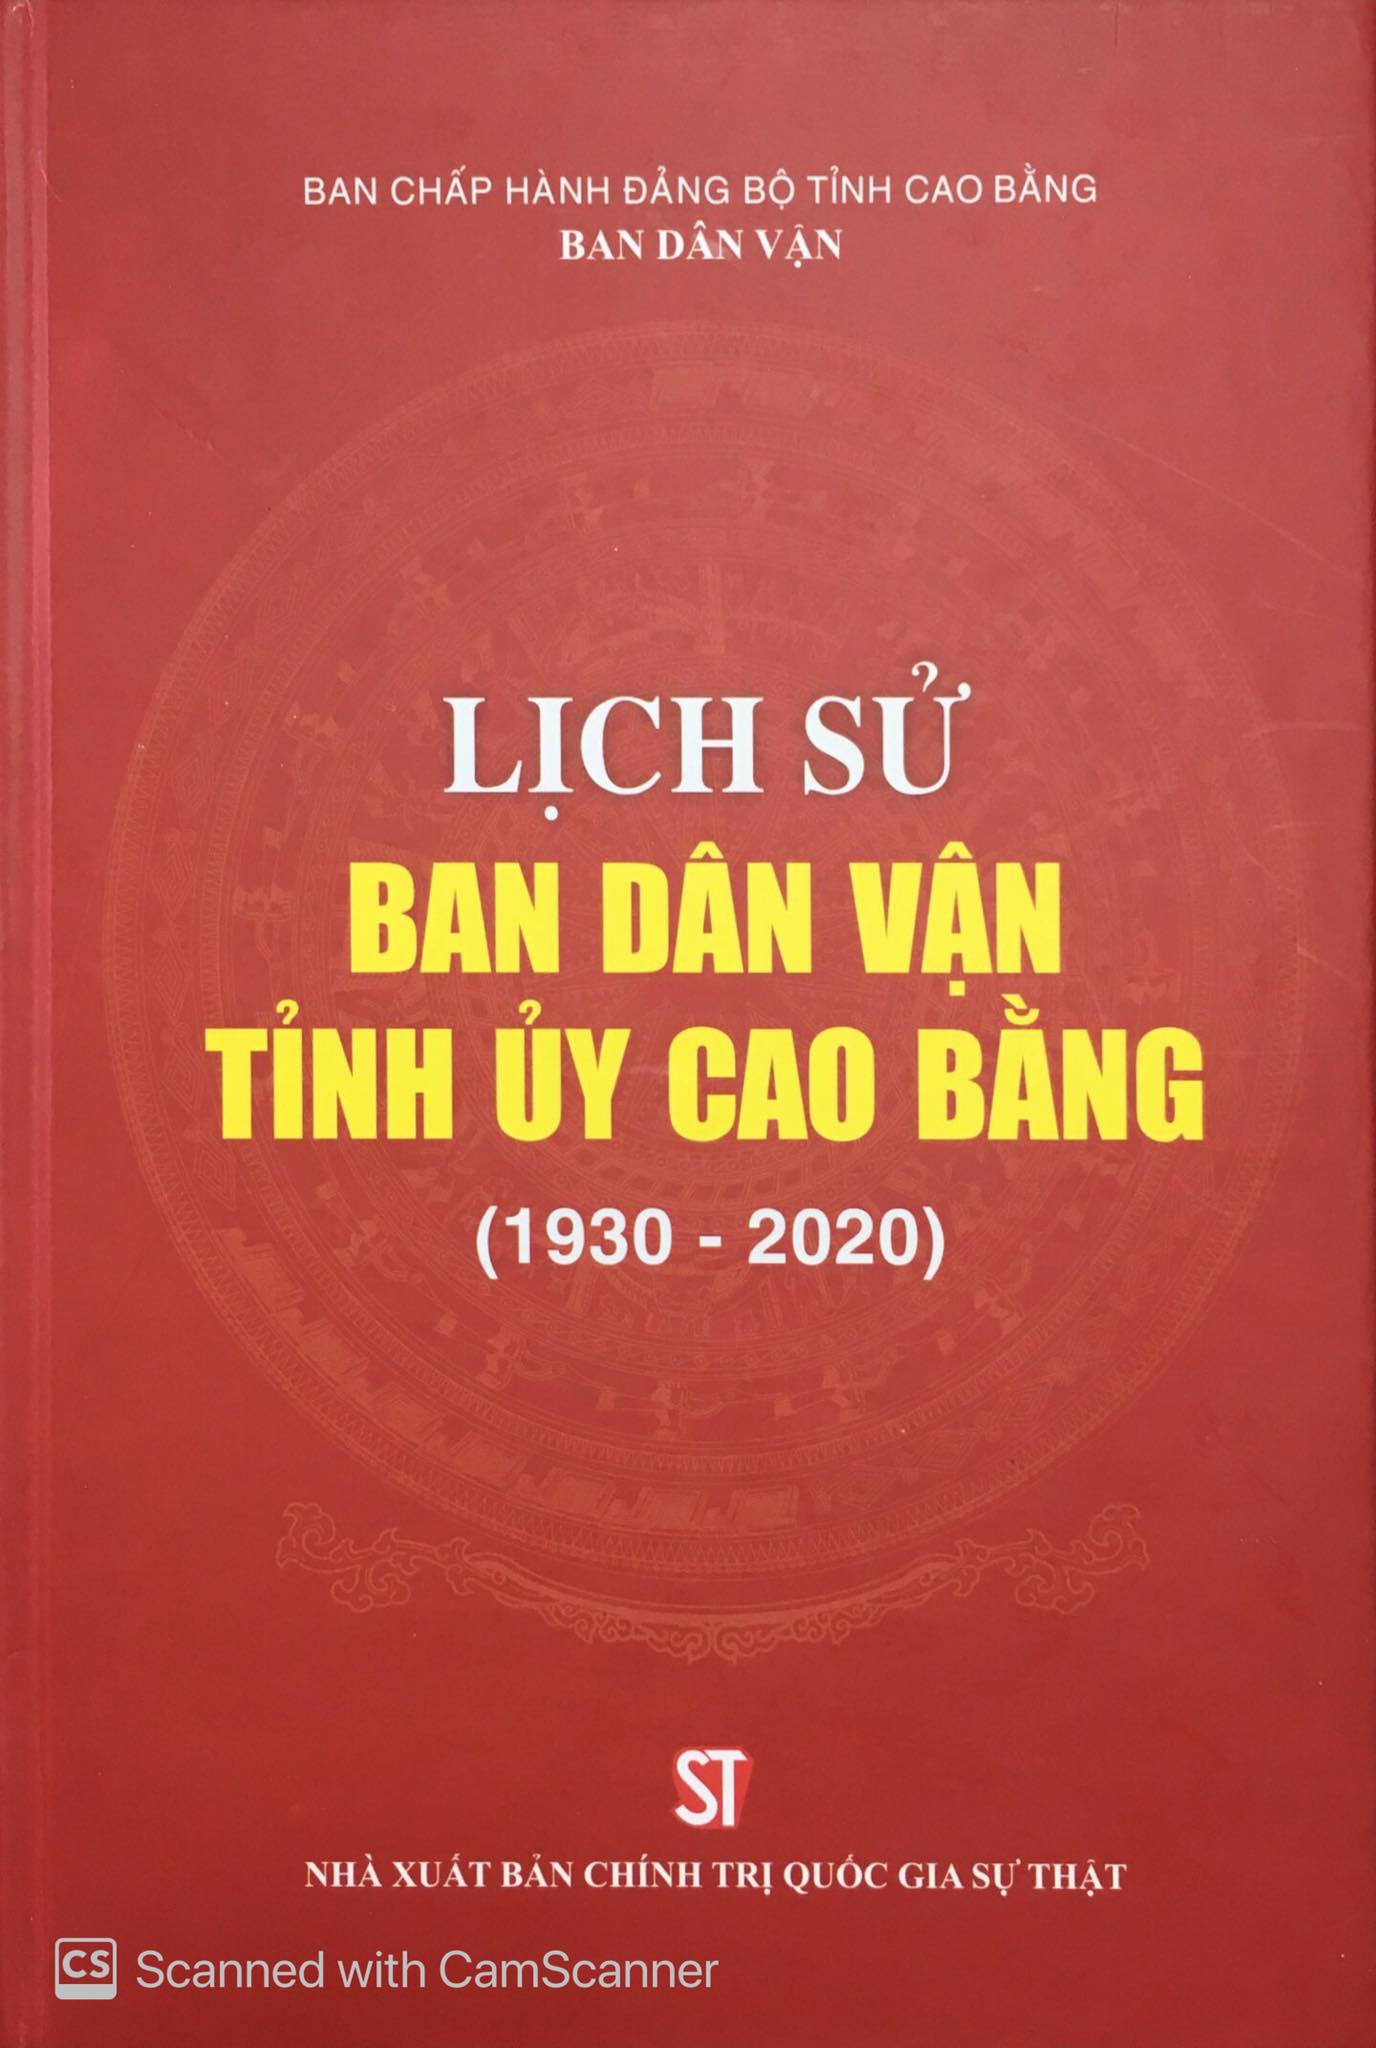  Lịch sử Ban Dân vận tỉnh Cao Bằng (1930 - 2020)